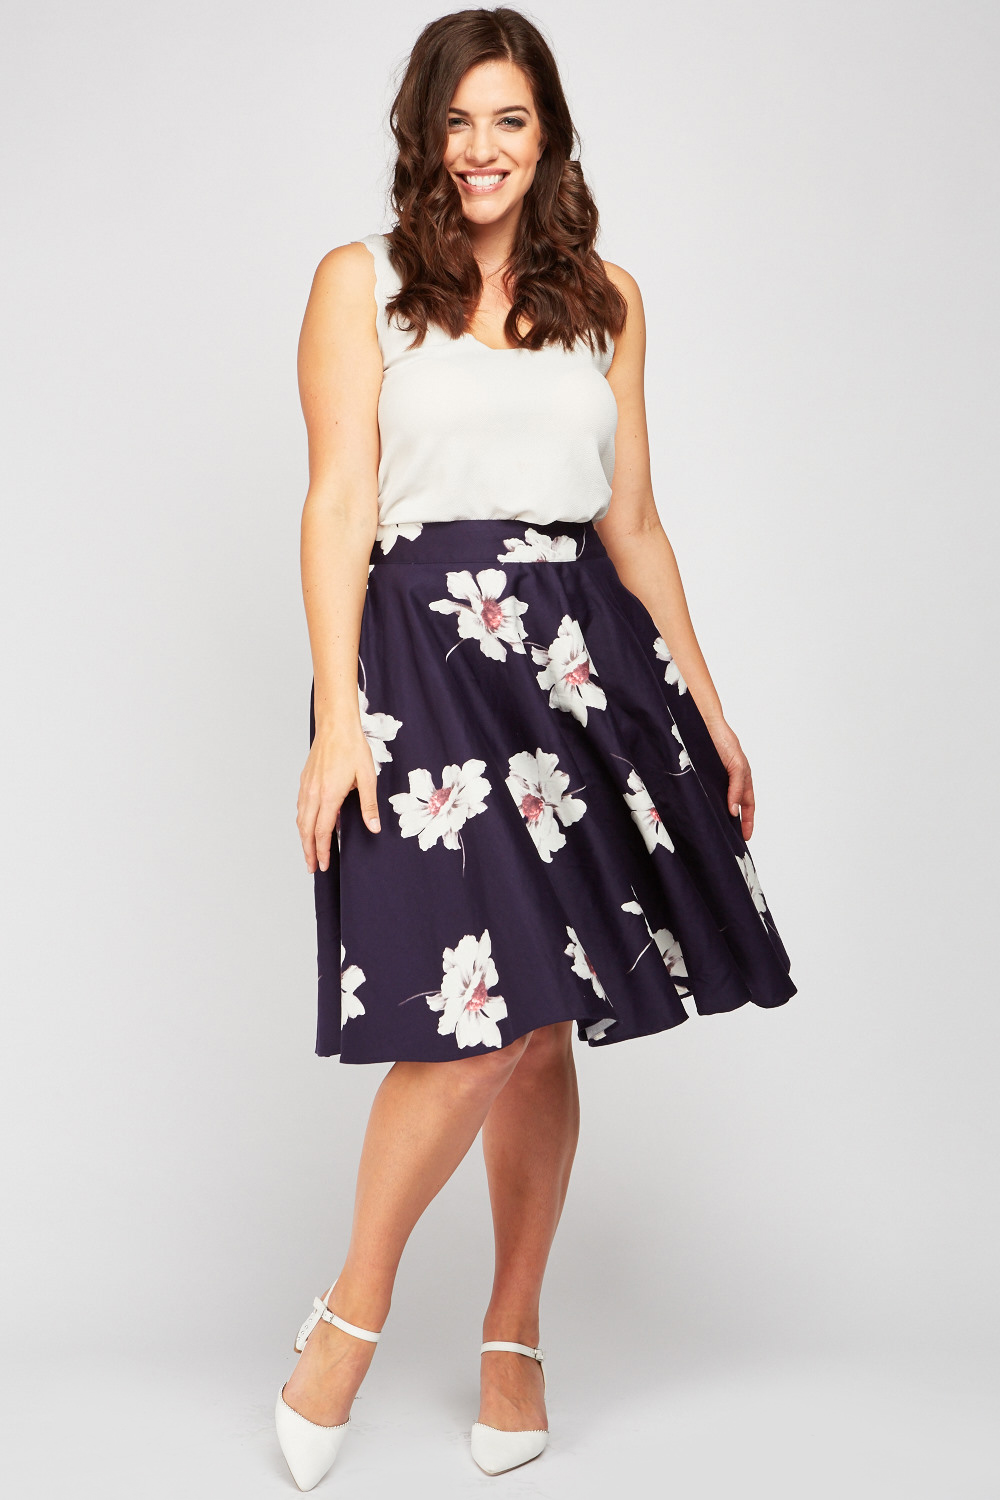 Flower Print Midi Flared Skirt - Just $6